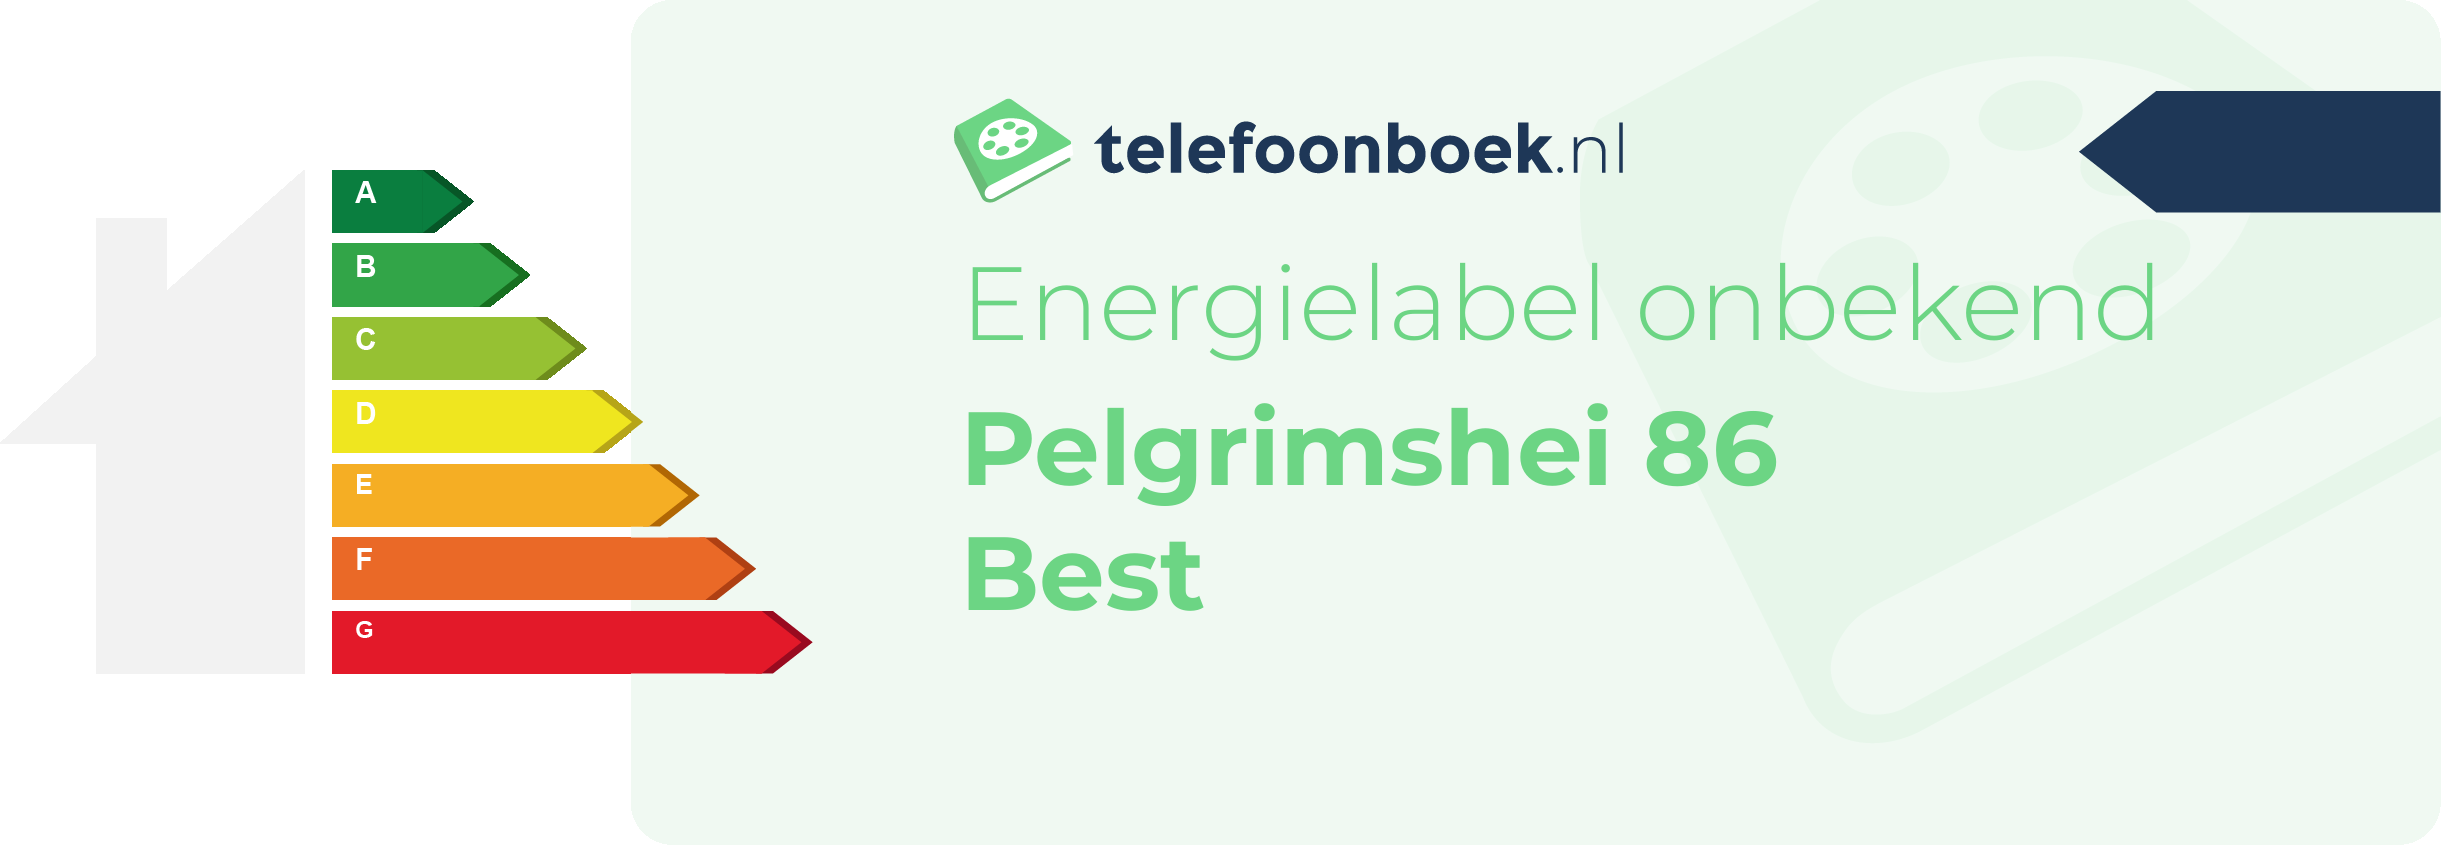 Energielabel Pelgrimshei 86 Best